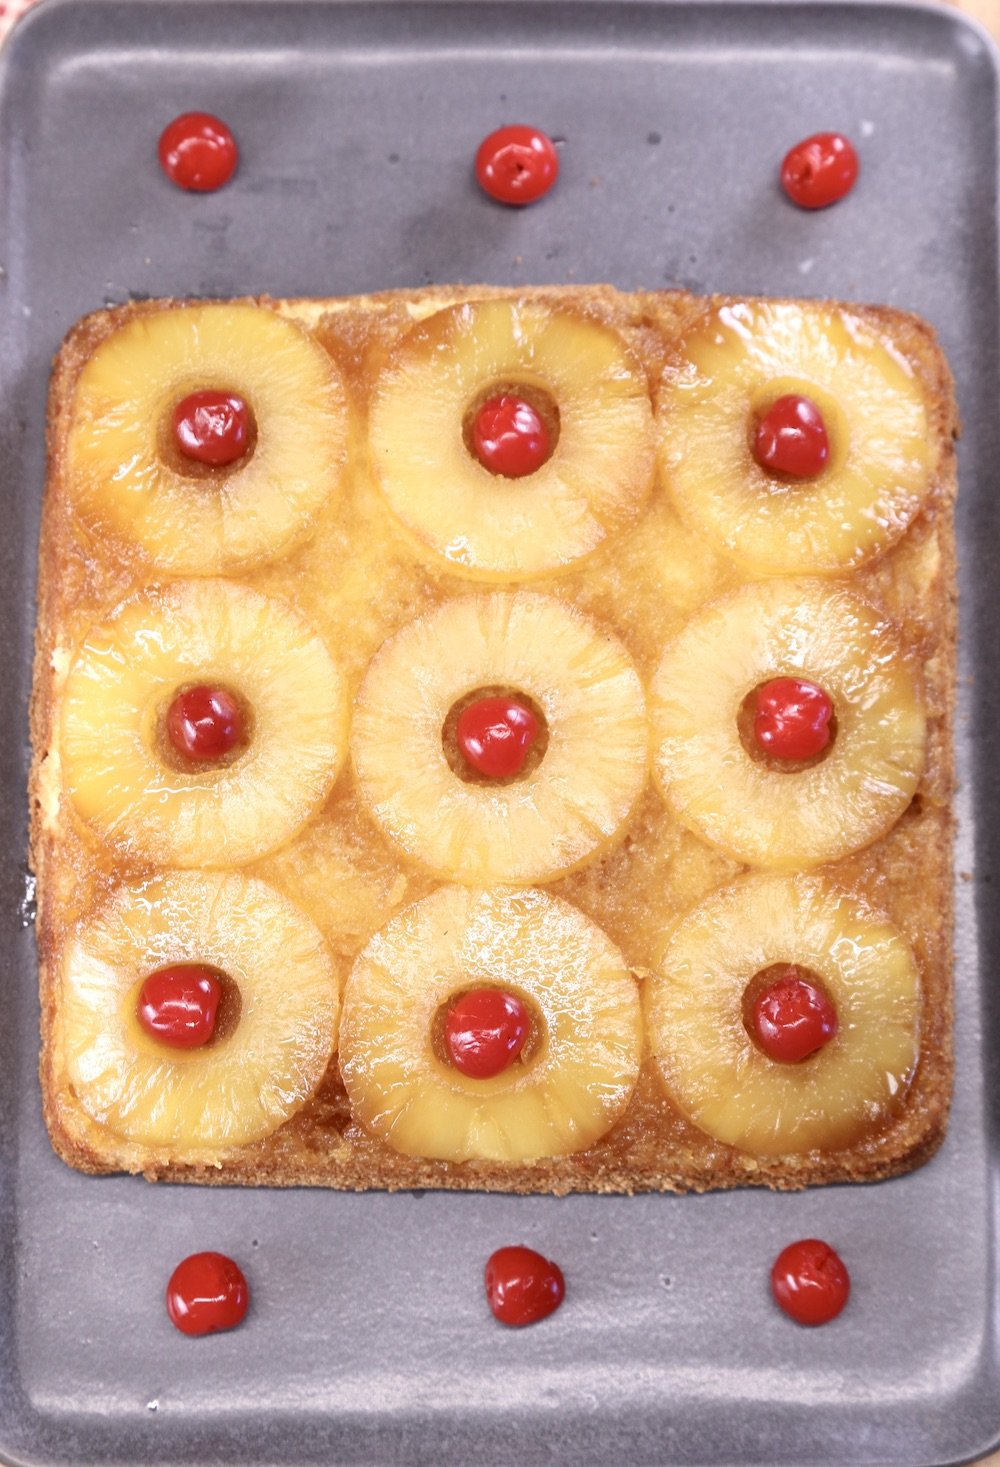 Pineapple Upside Down Cake with maraschino cherries